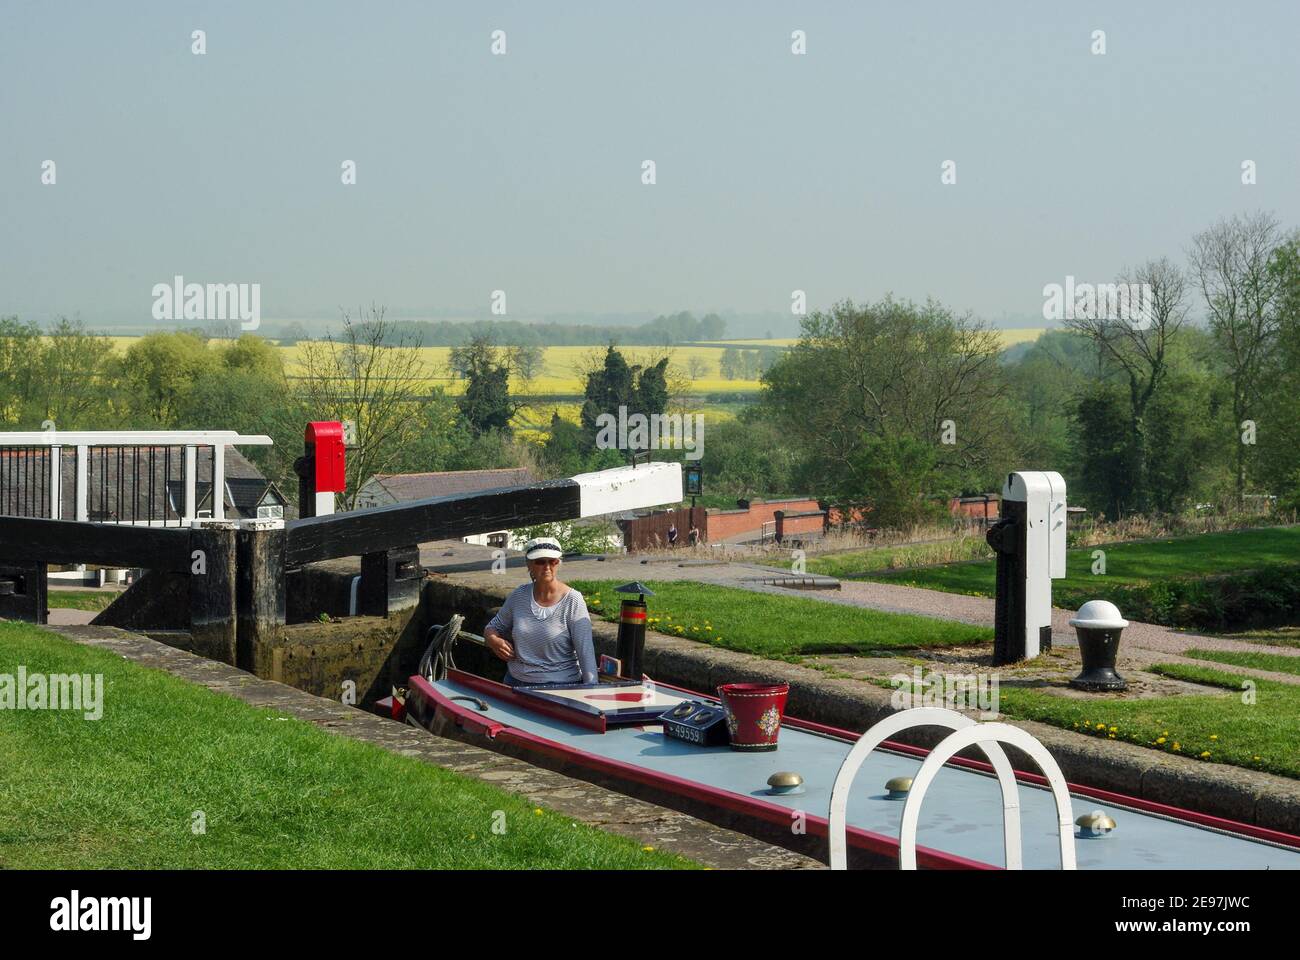 Foxton écluses sur le canal de Grand Union , Foxton, Leicestershire, Royaume-Uni; femme en bateau à narrowboat naviguant sur le vol historique des écluses. Banque D'Images